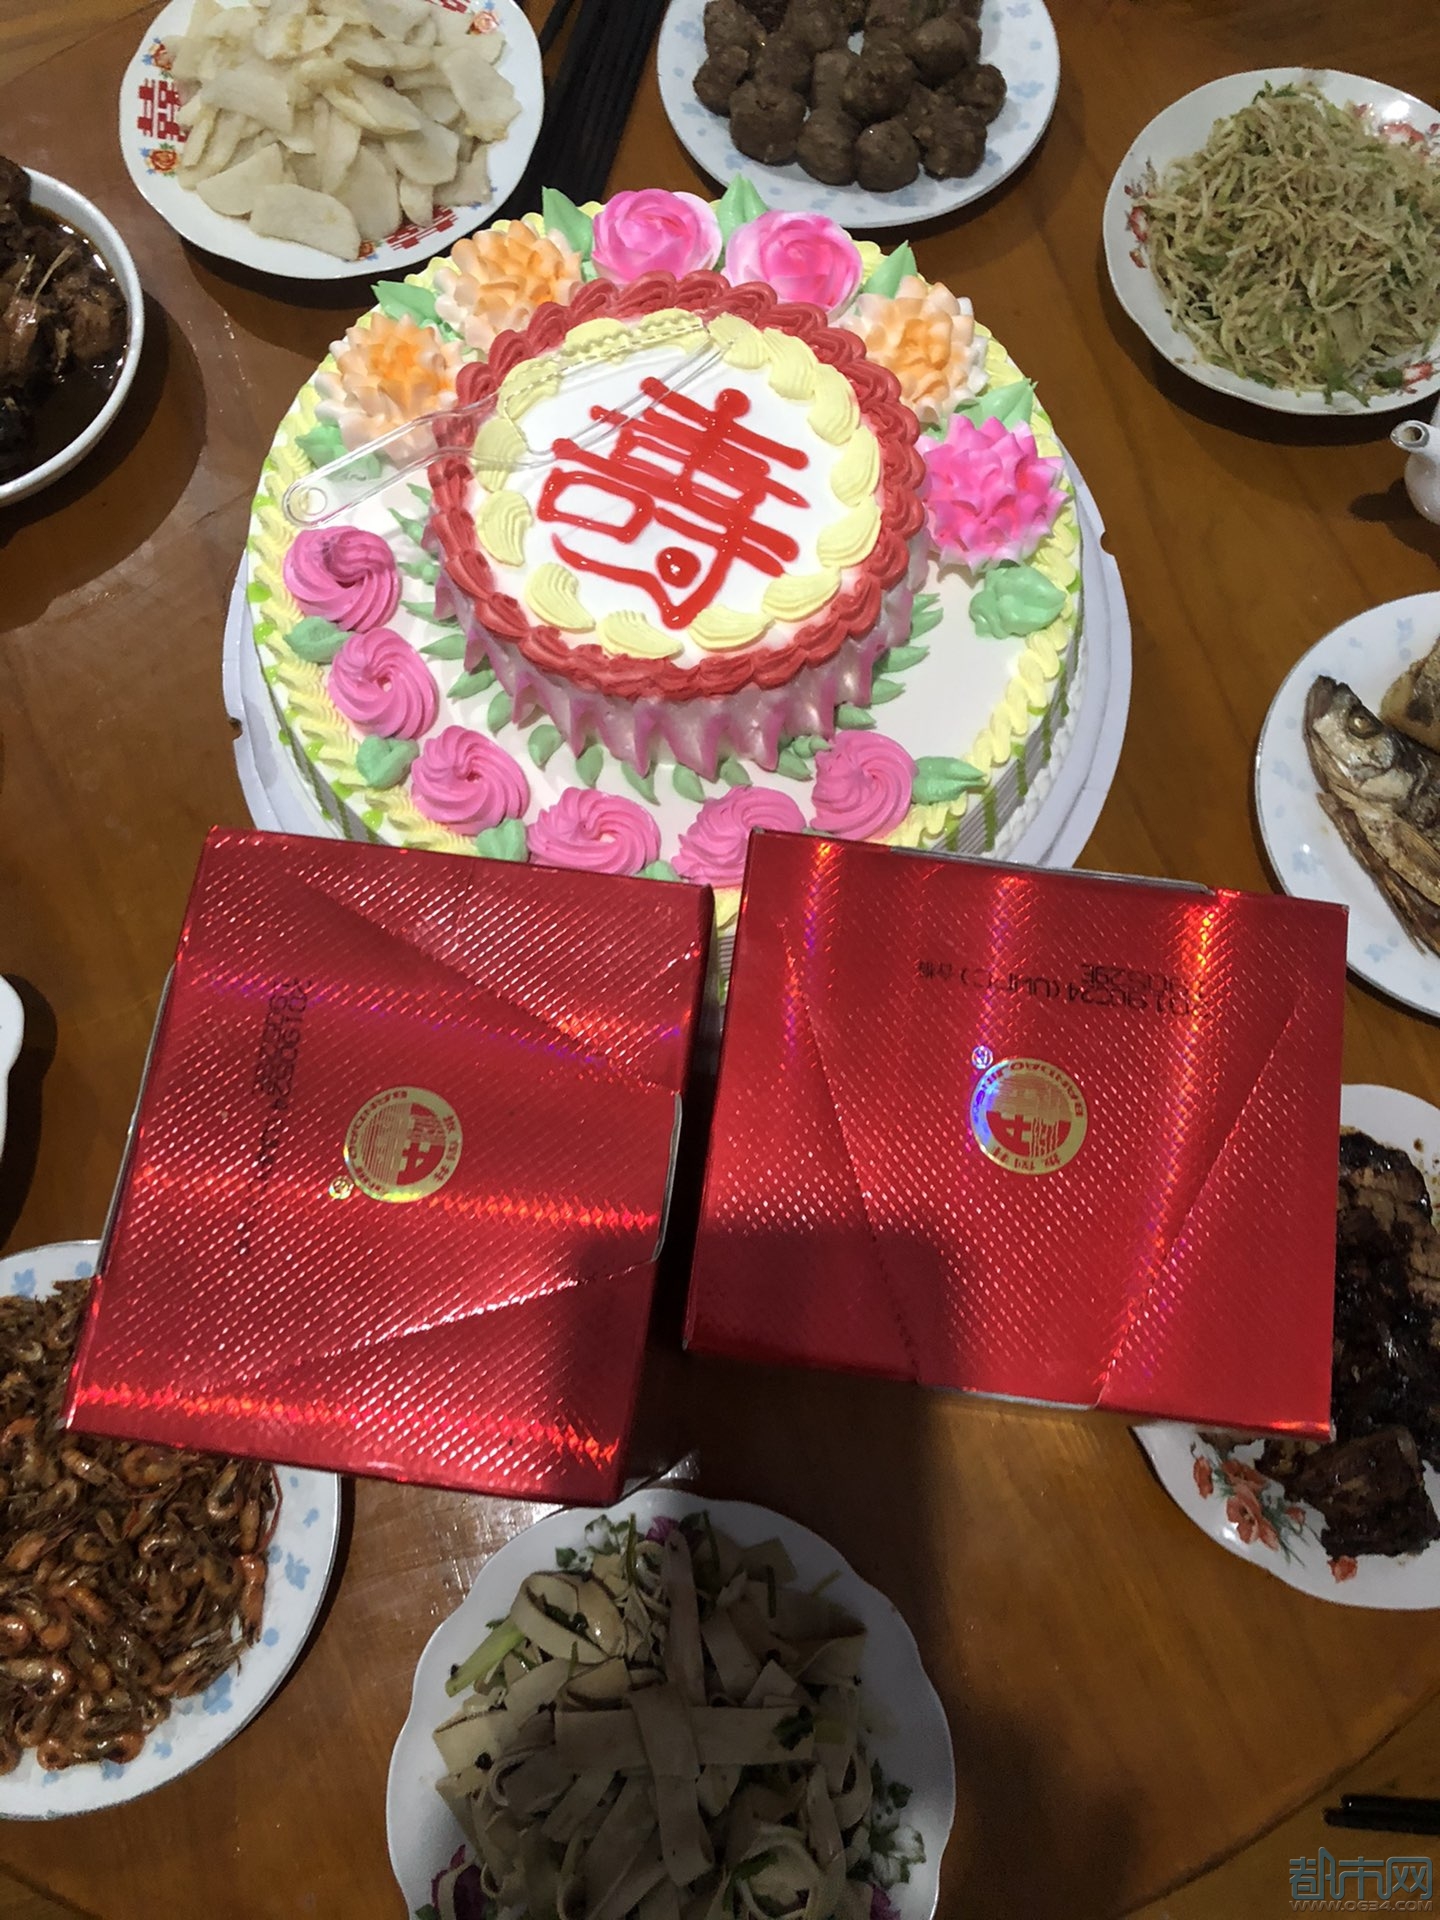 给母亲的生日蛋糕图片-图库-五毛网